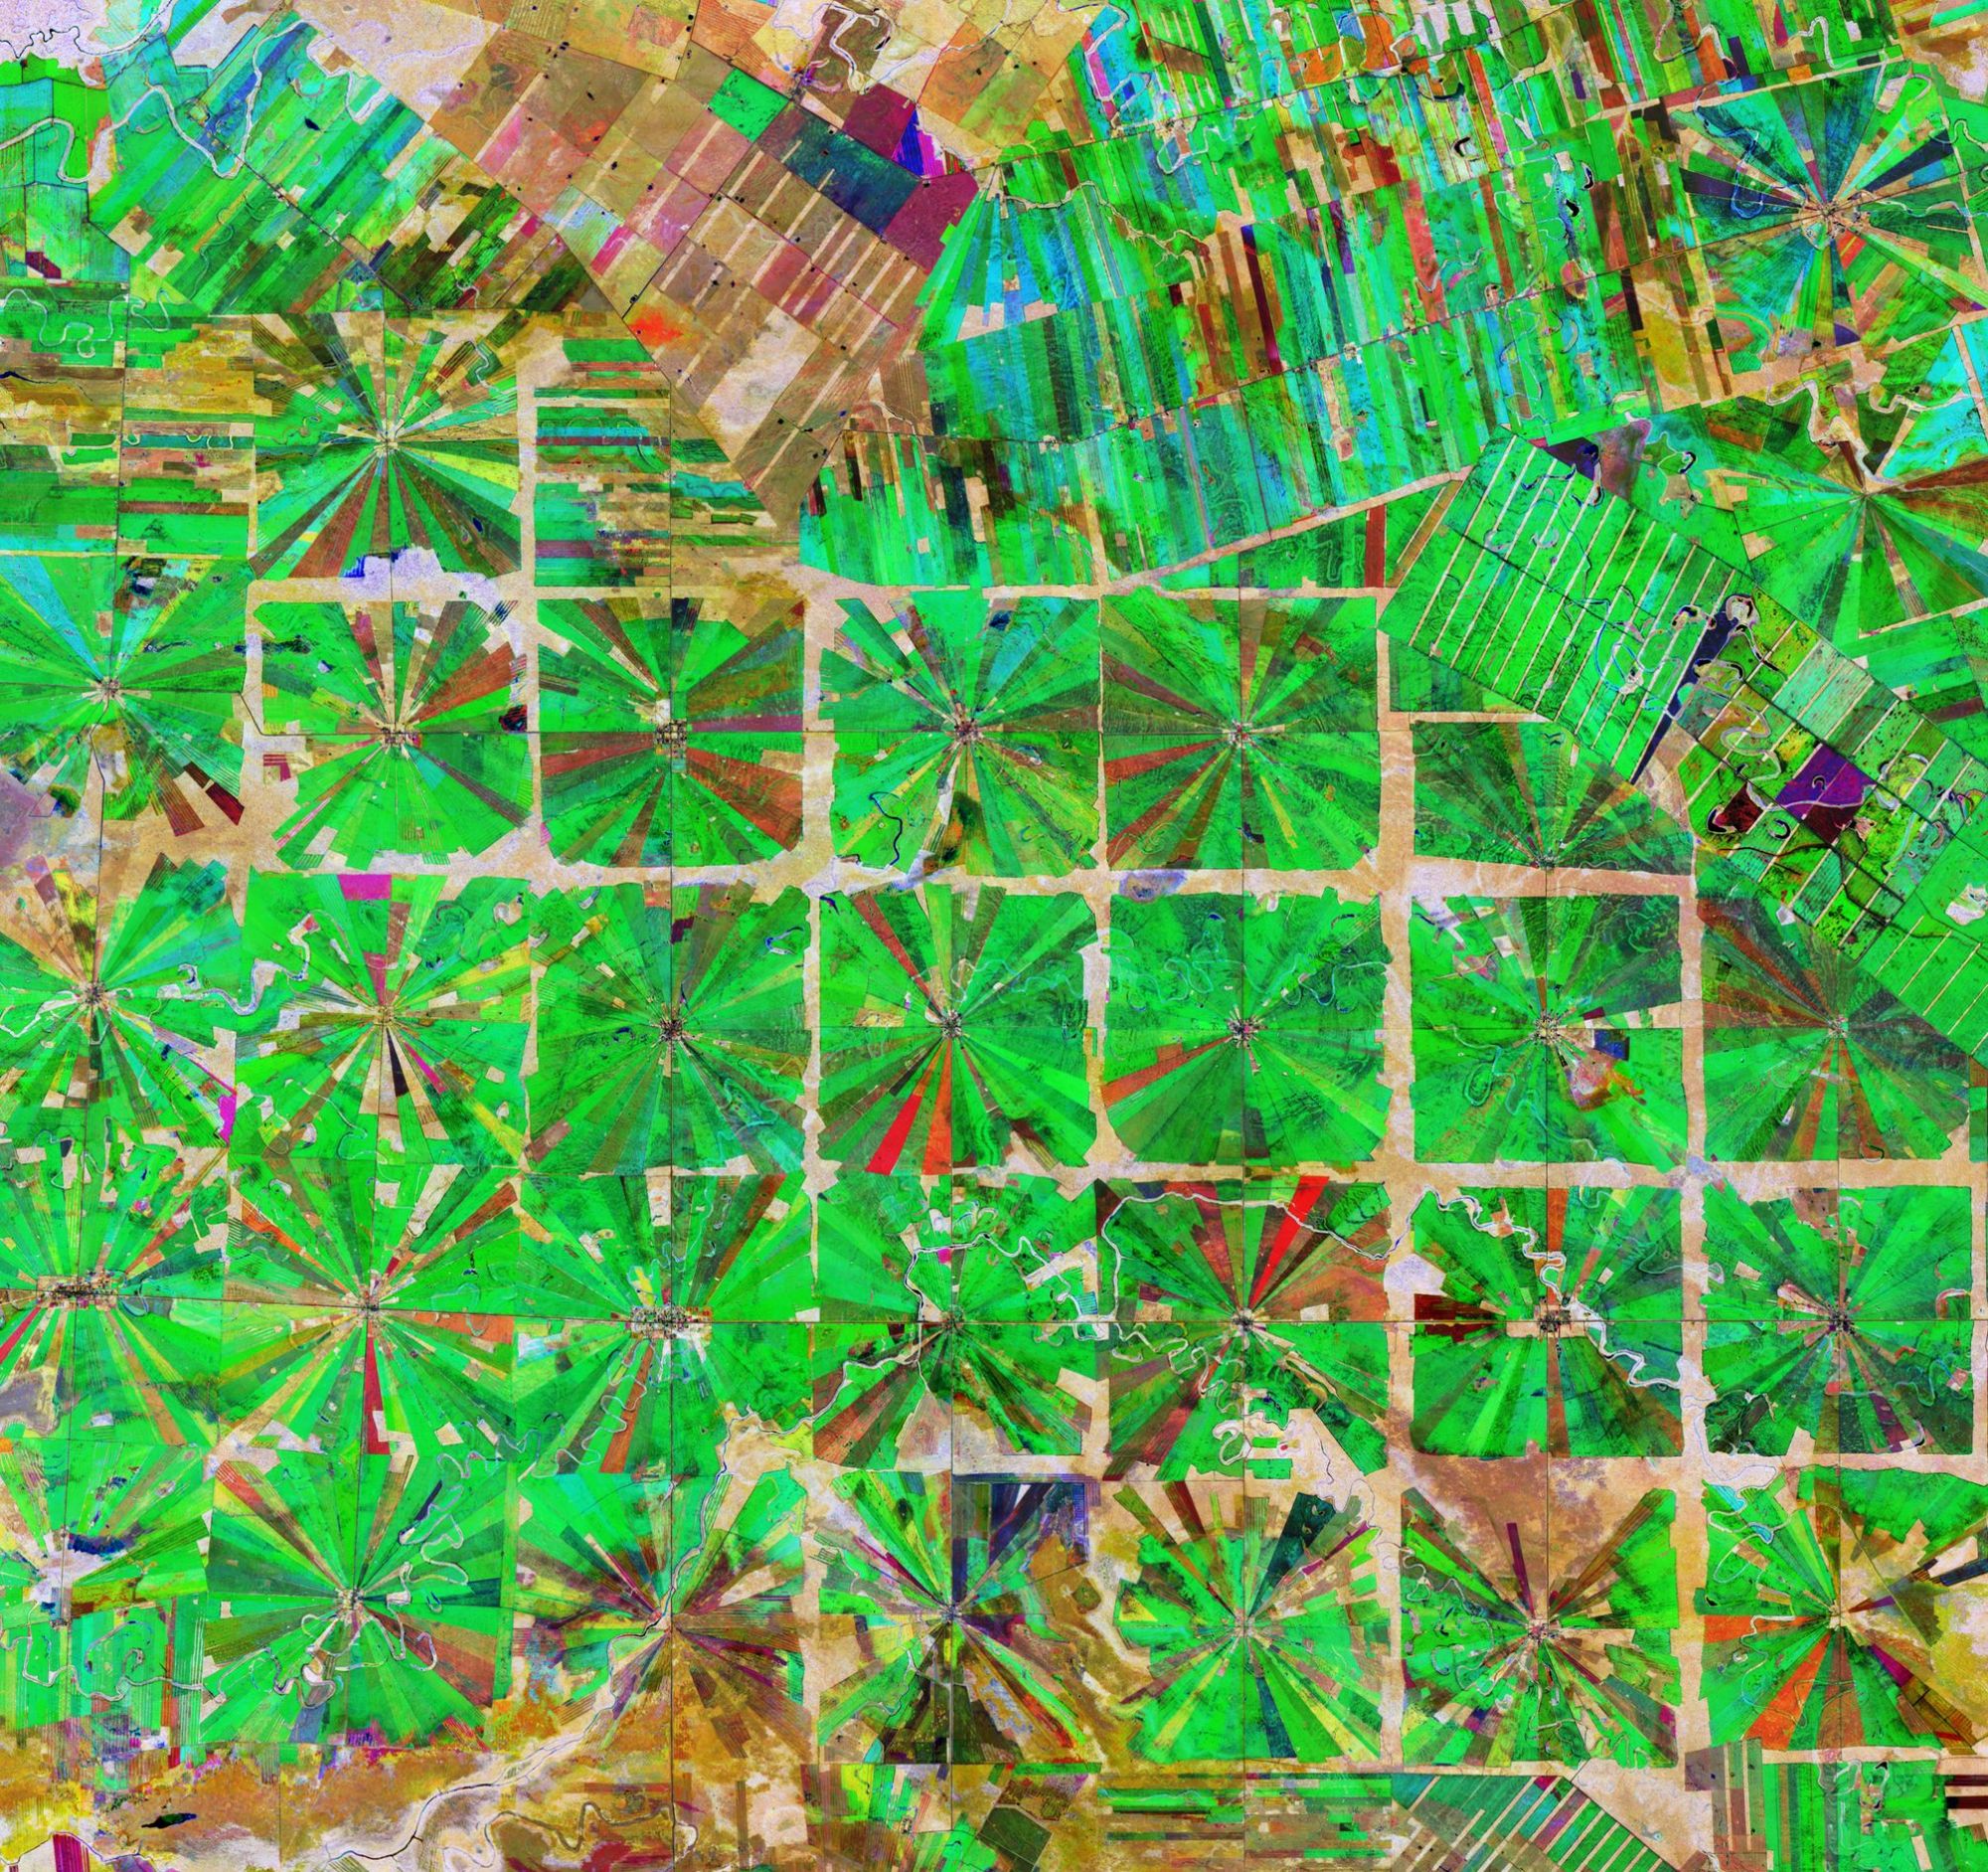 Фермерские поля возле Санта-Круз, Боливия. Спутниковый снимок, раскрашенный в соответствии с вегетационным индексом растительности